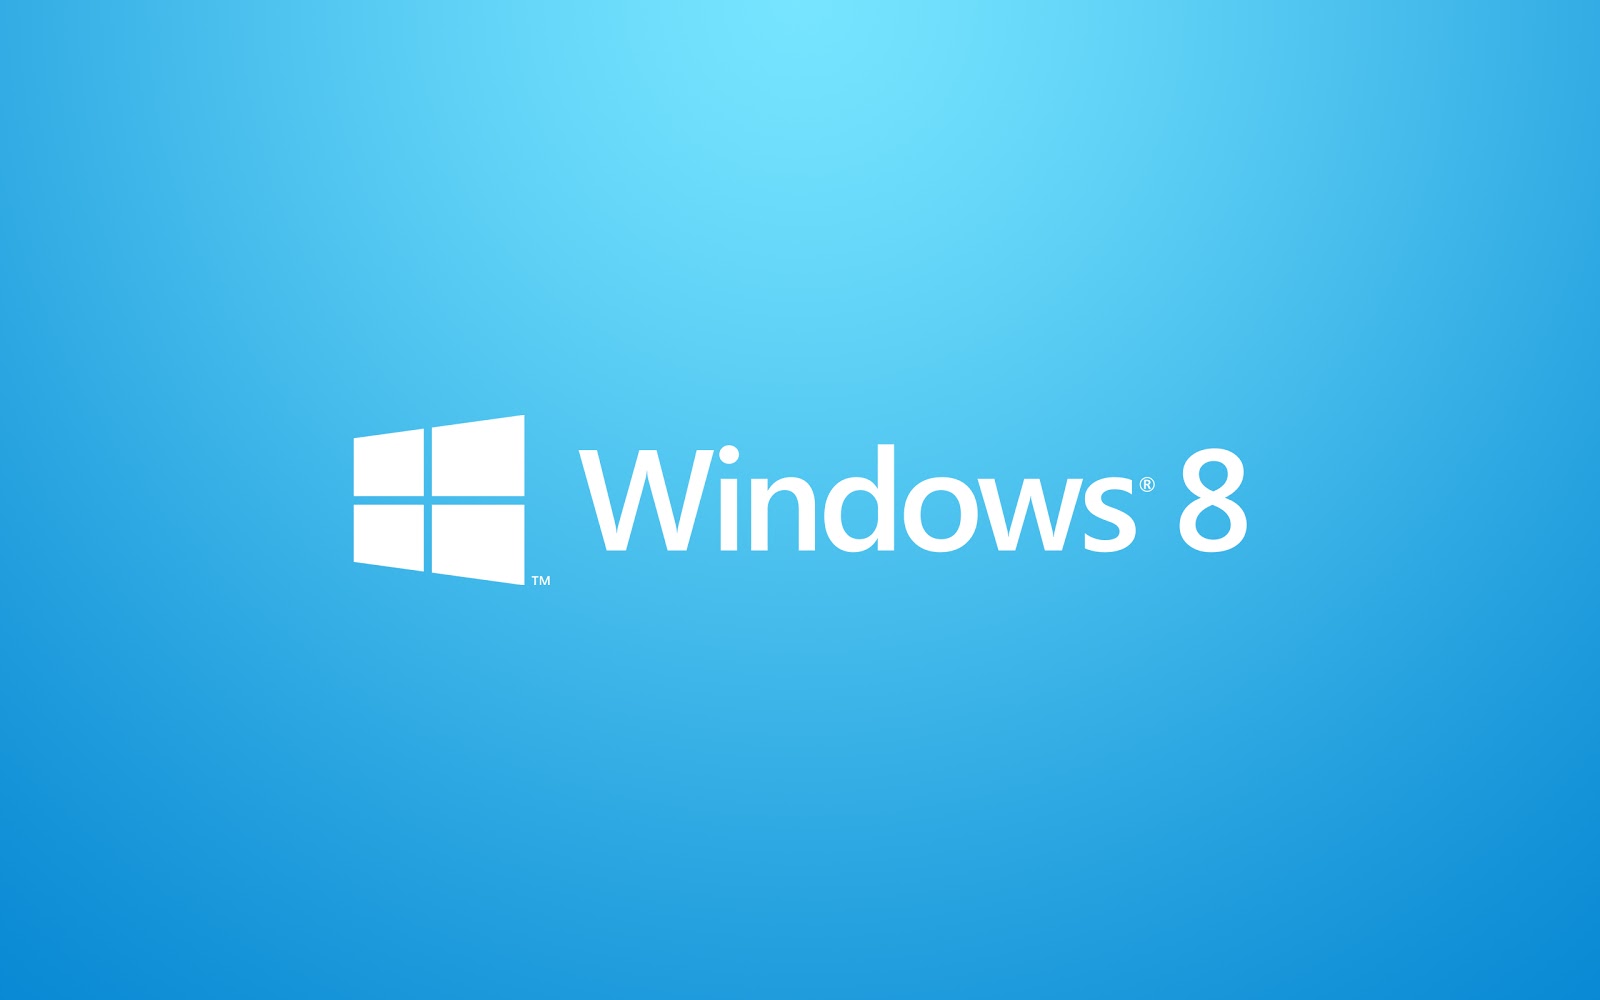 thèmes de fond d'écran windows 8.1,bleu,texte,aqua,police de caractère,turquoise